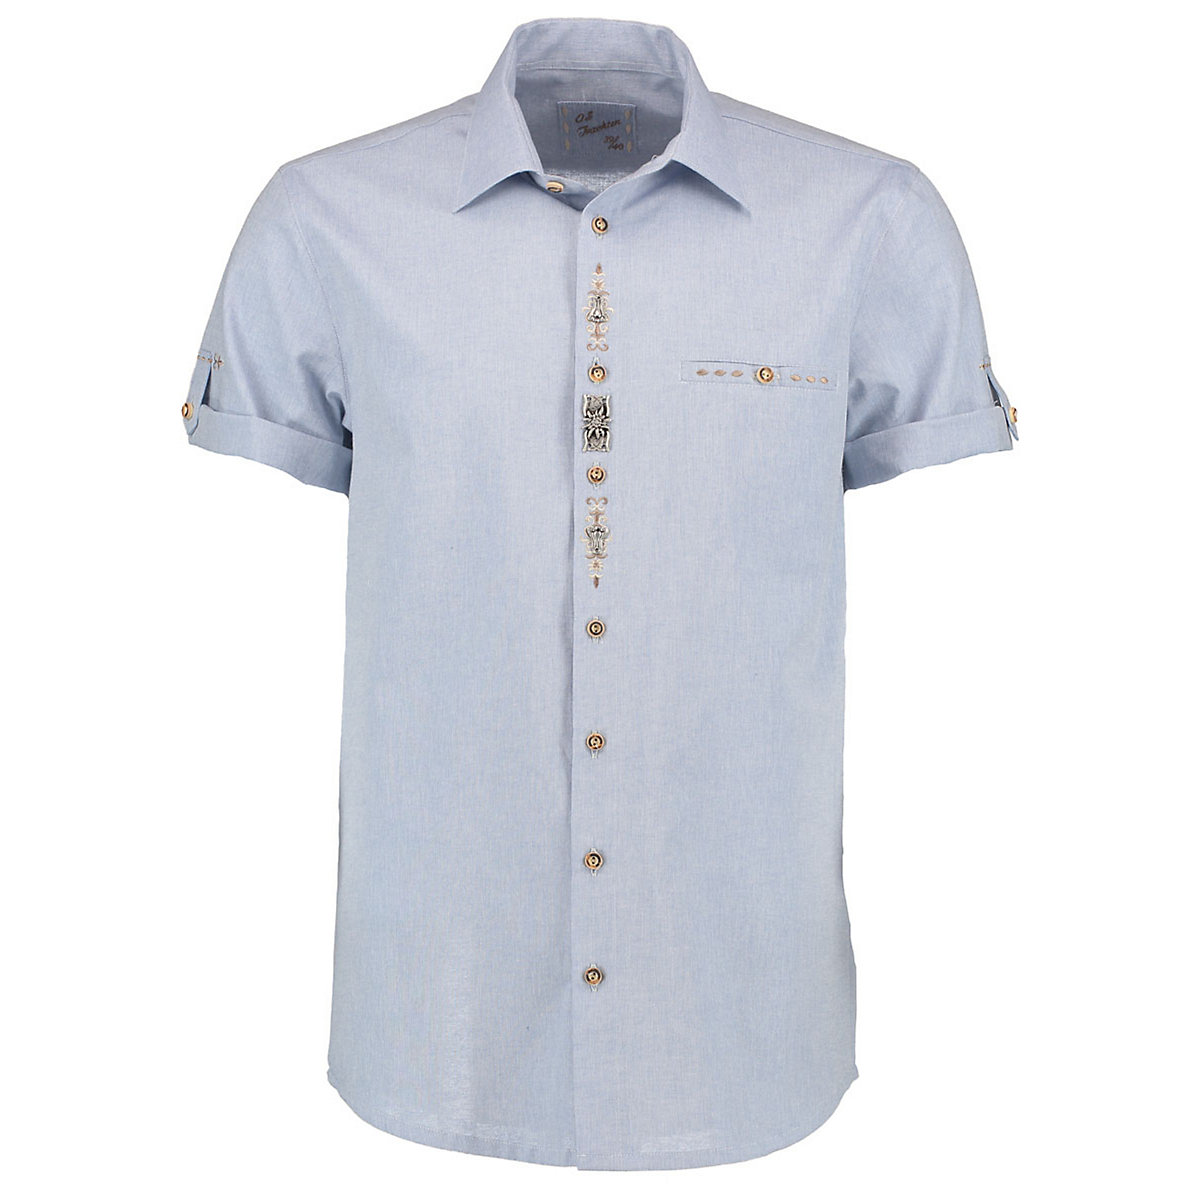 OS Trachten Herren Kurzarm Trachtenhemd mit Edelweiß-Zierteil auf der Knopfleiste Flino blau